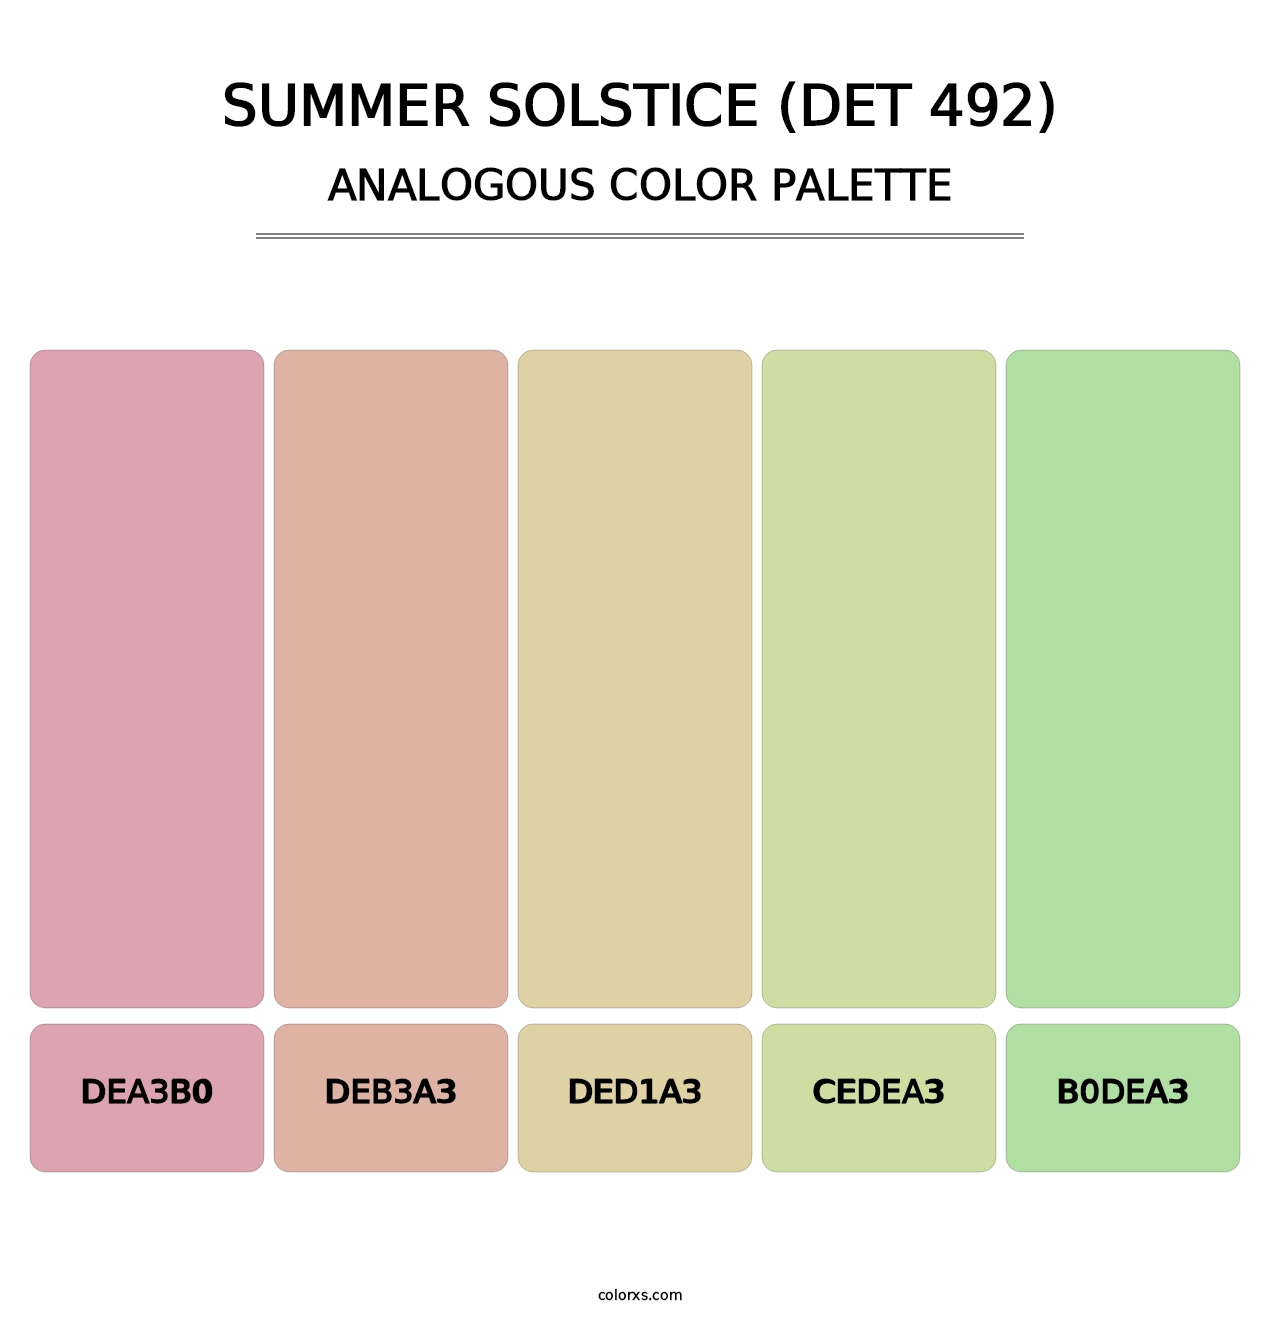 Summer Solstice (DET 492) - Analogous Color Palette